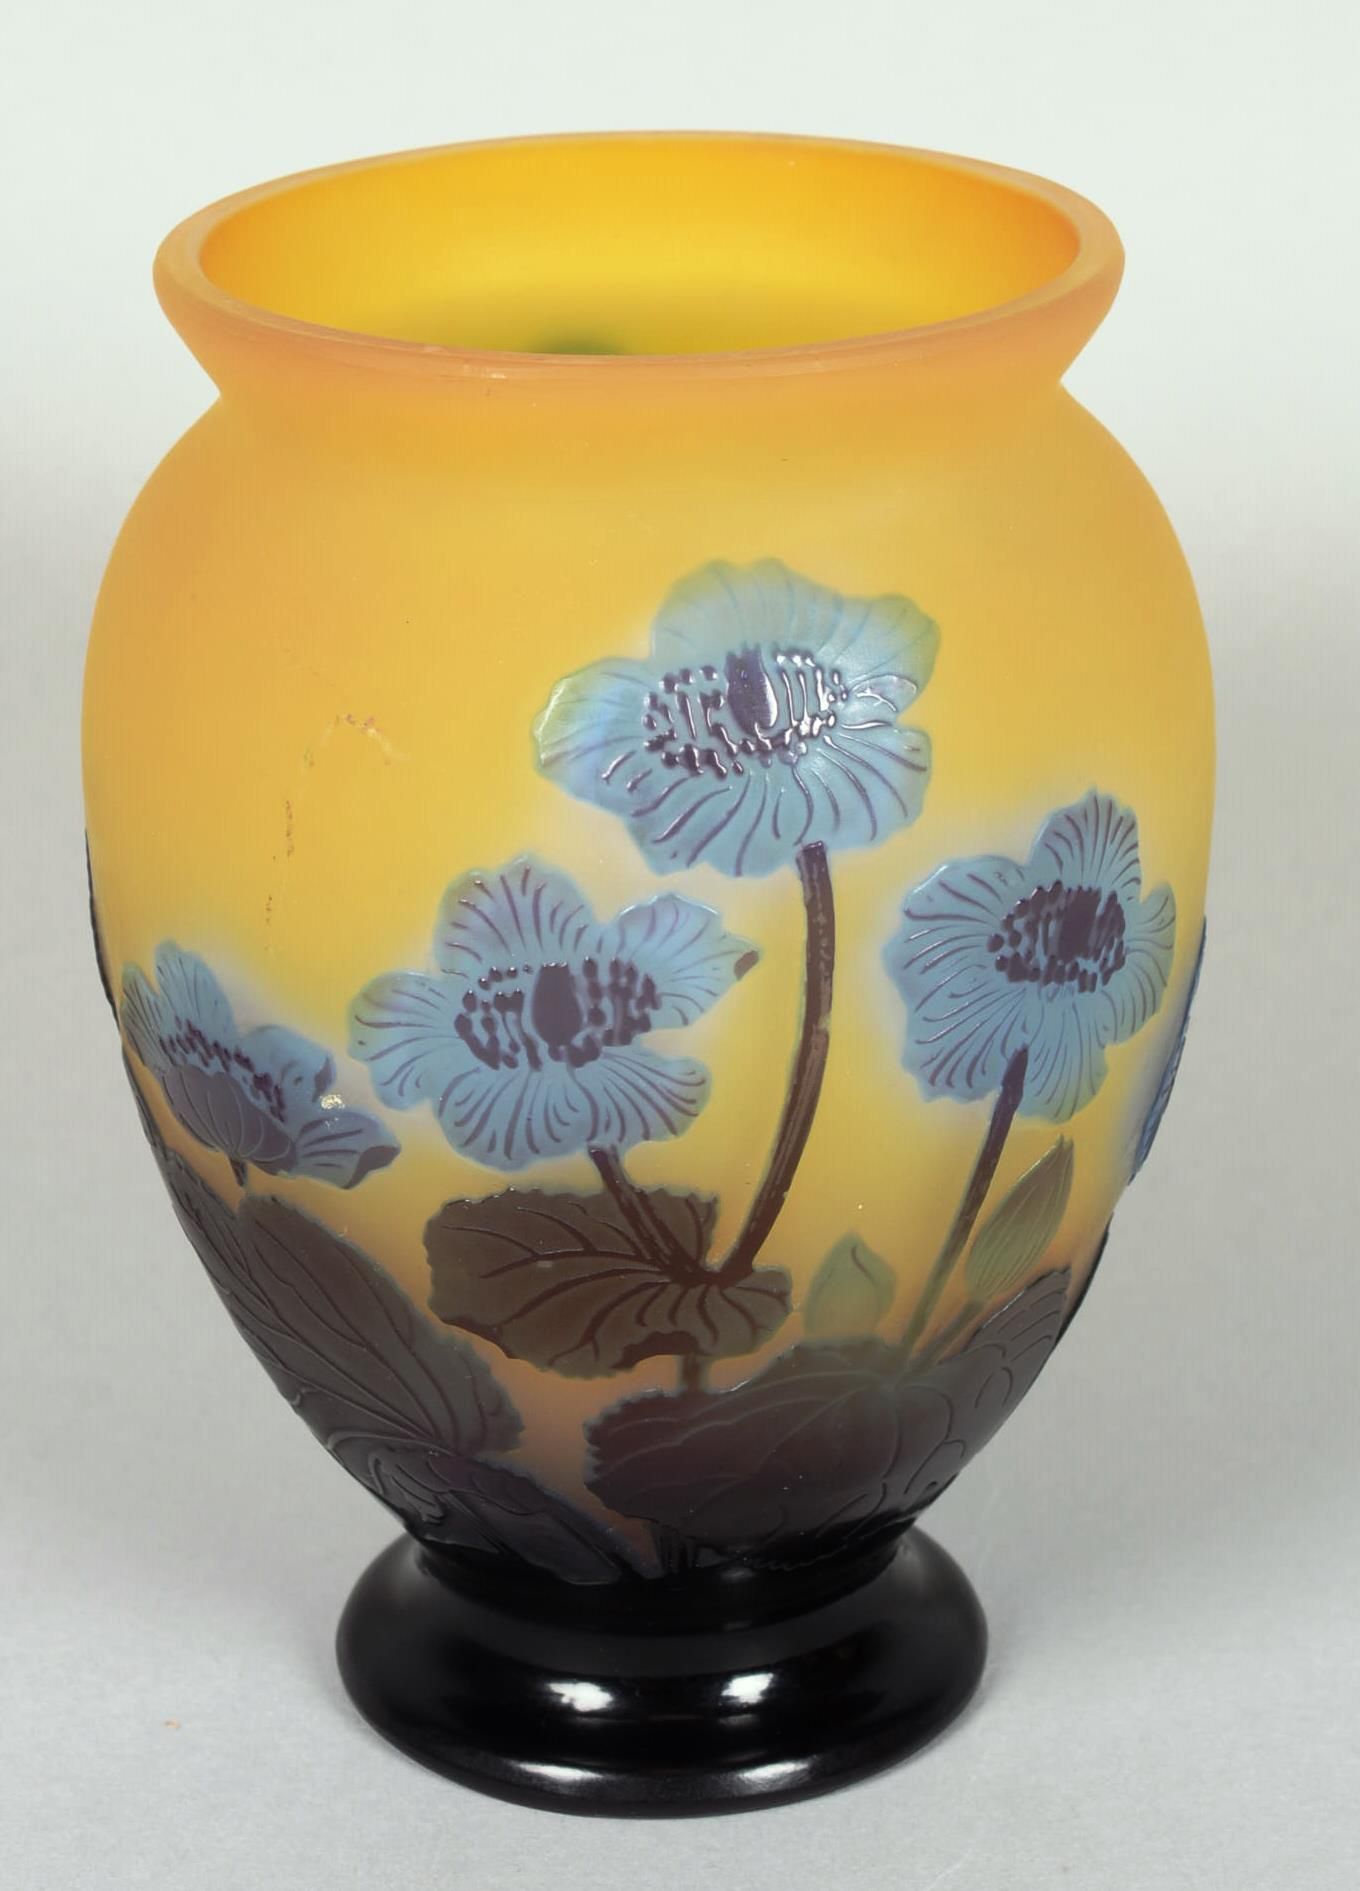 Null Émile GALLÉ (1846-1904)

Jh. Vase aus mehrschichtigem Glas mit säuregeätzte&hellip;